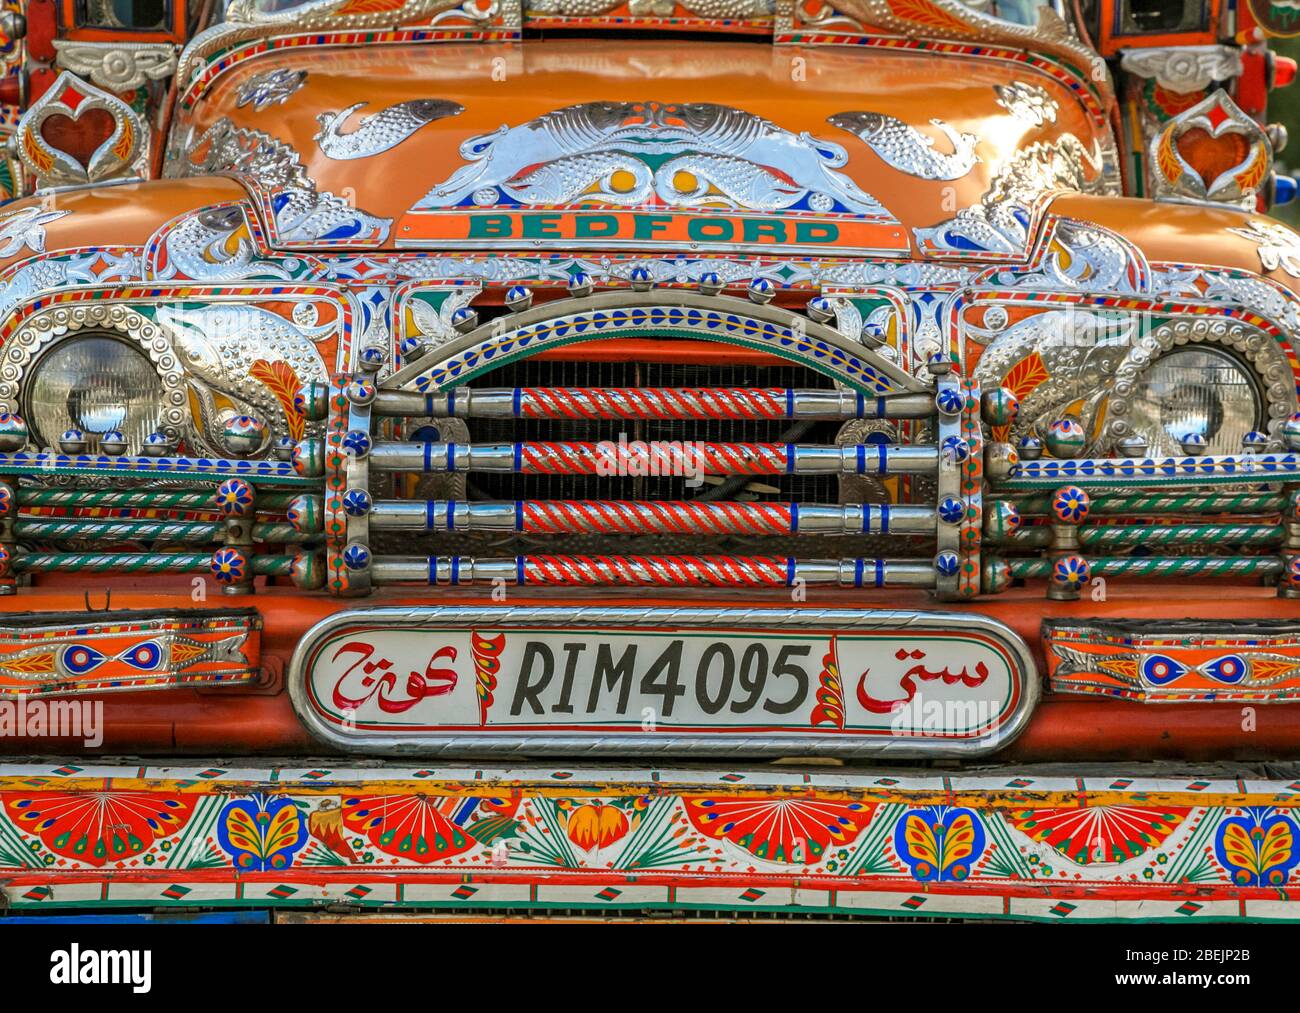 Un vecchio camion Bedford molto colorato, decorato con immagini religiose e arte tradizionale, nel Nord del Pakistan. Foto Stock